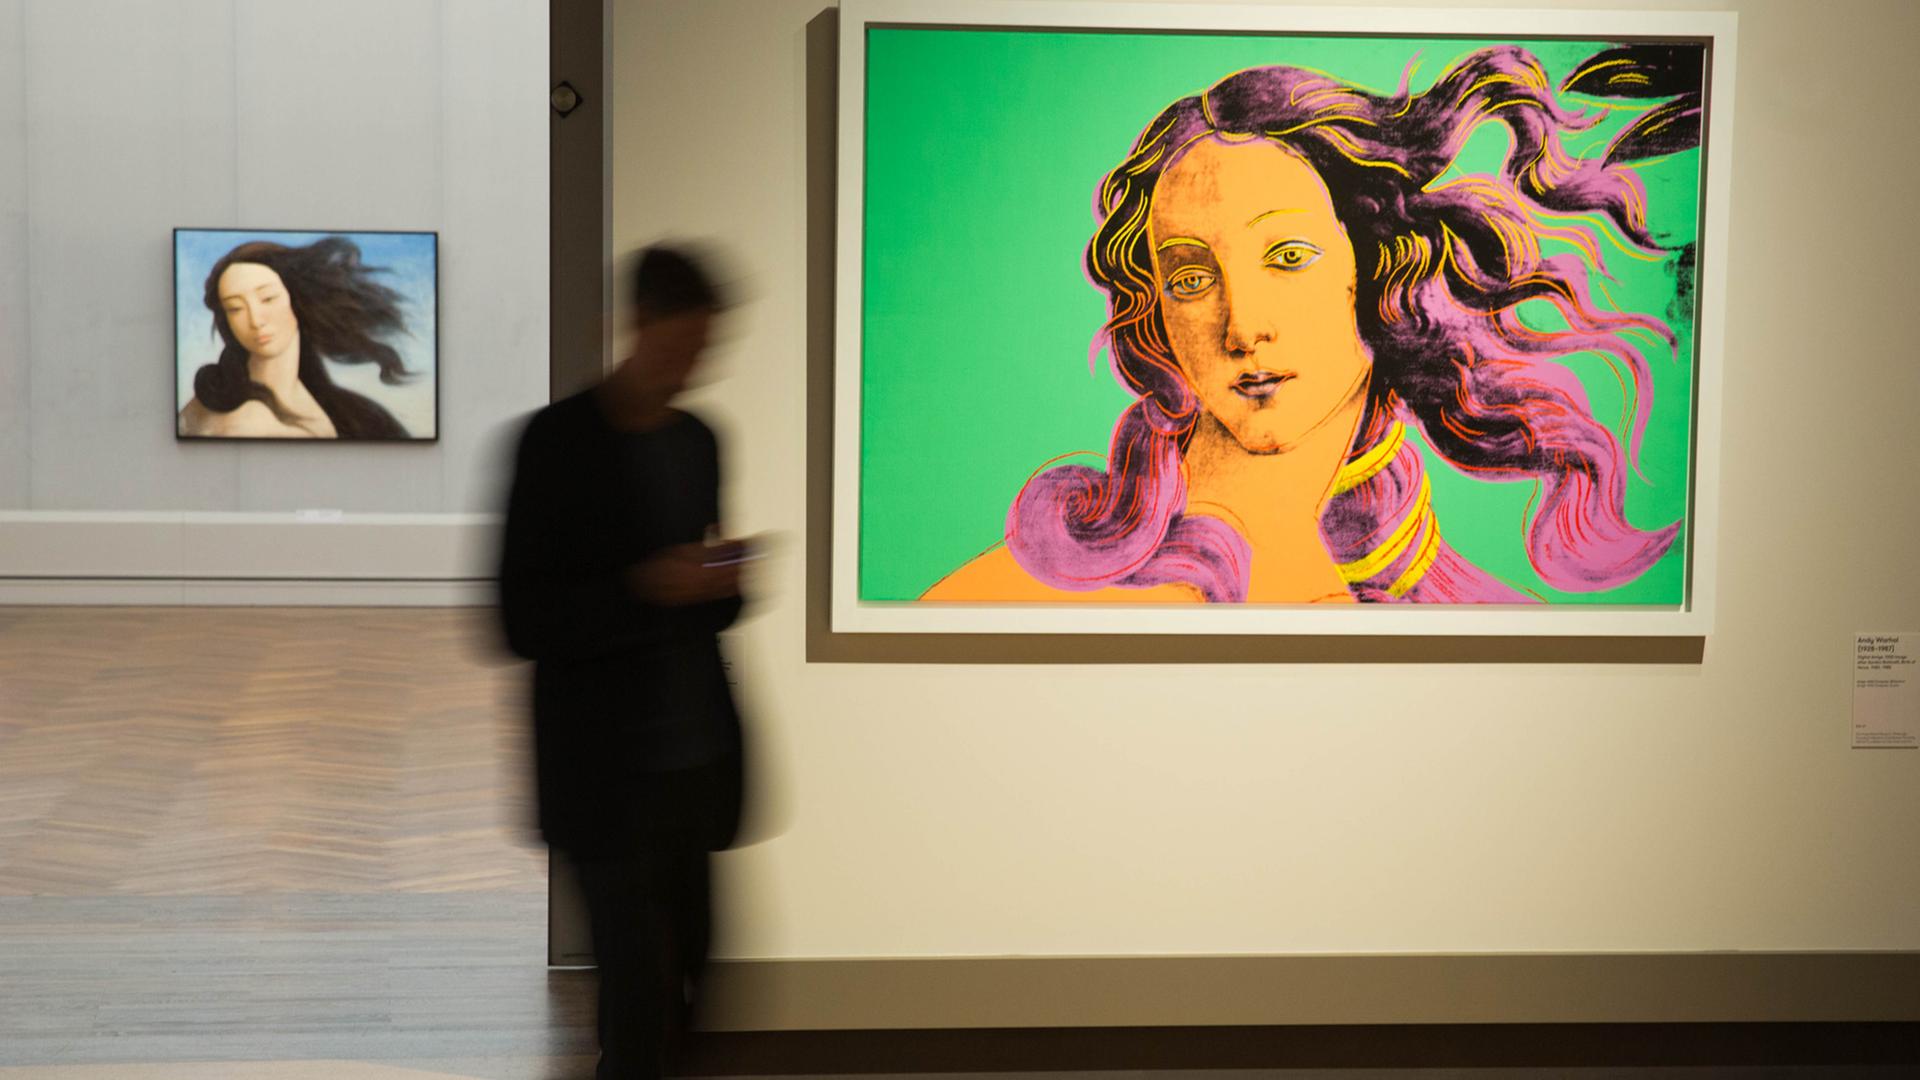 Die Werke Venus von Yin Xin (l.) und von Andy Warhol in der Ausstellung "The Botticelli Renaissance" in der Gemäldegalerie in Berlin. Die Ausstellung kann vom 24. September 2015 bis zum 24. Januar 2016 besichtigt werden.